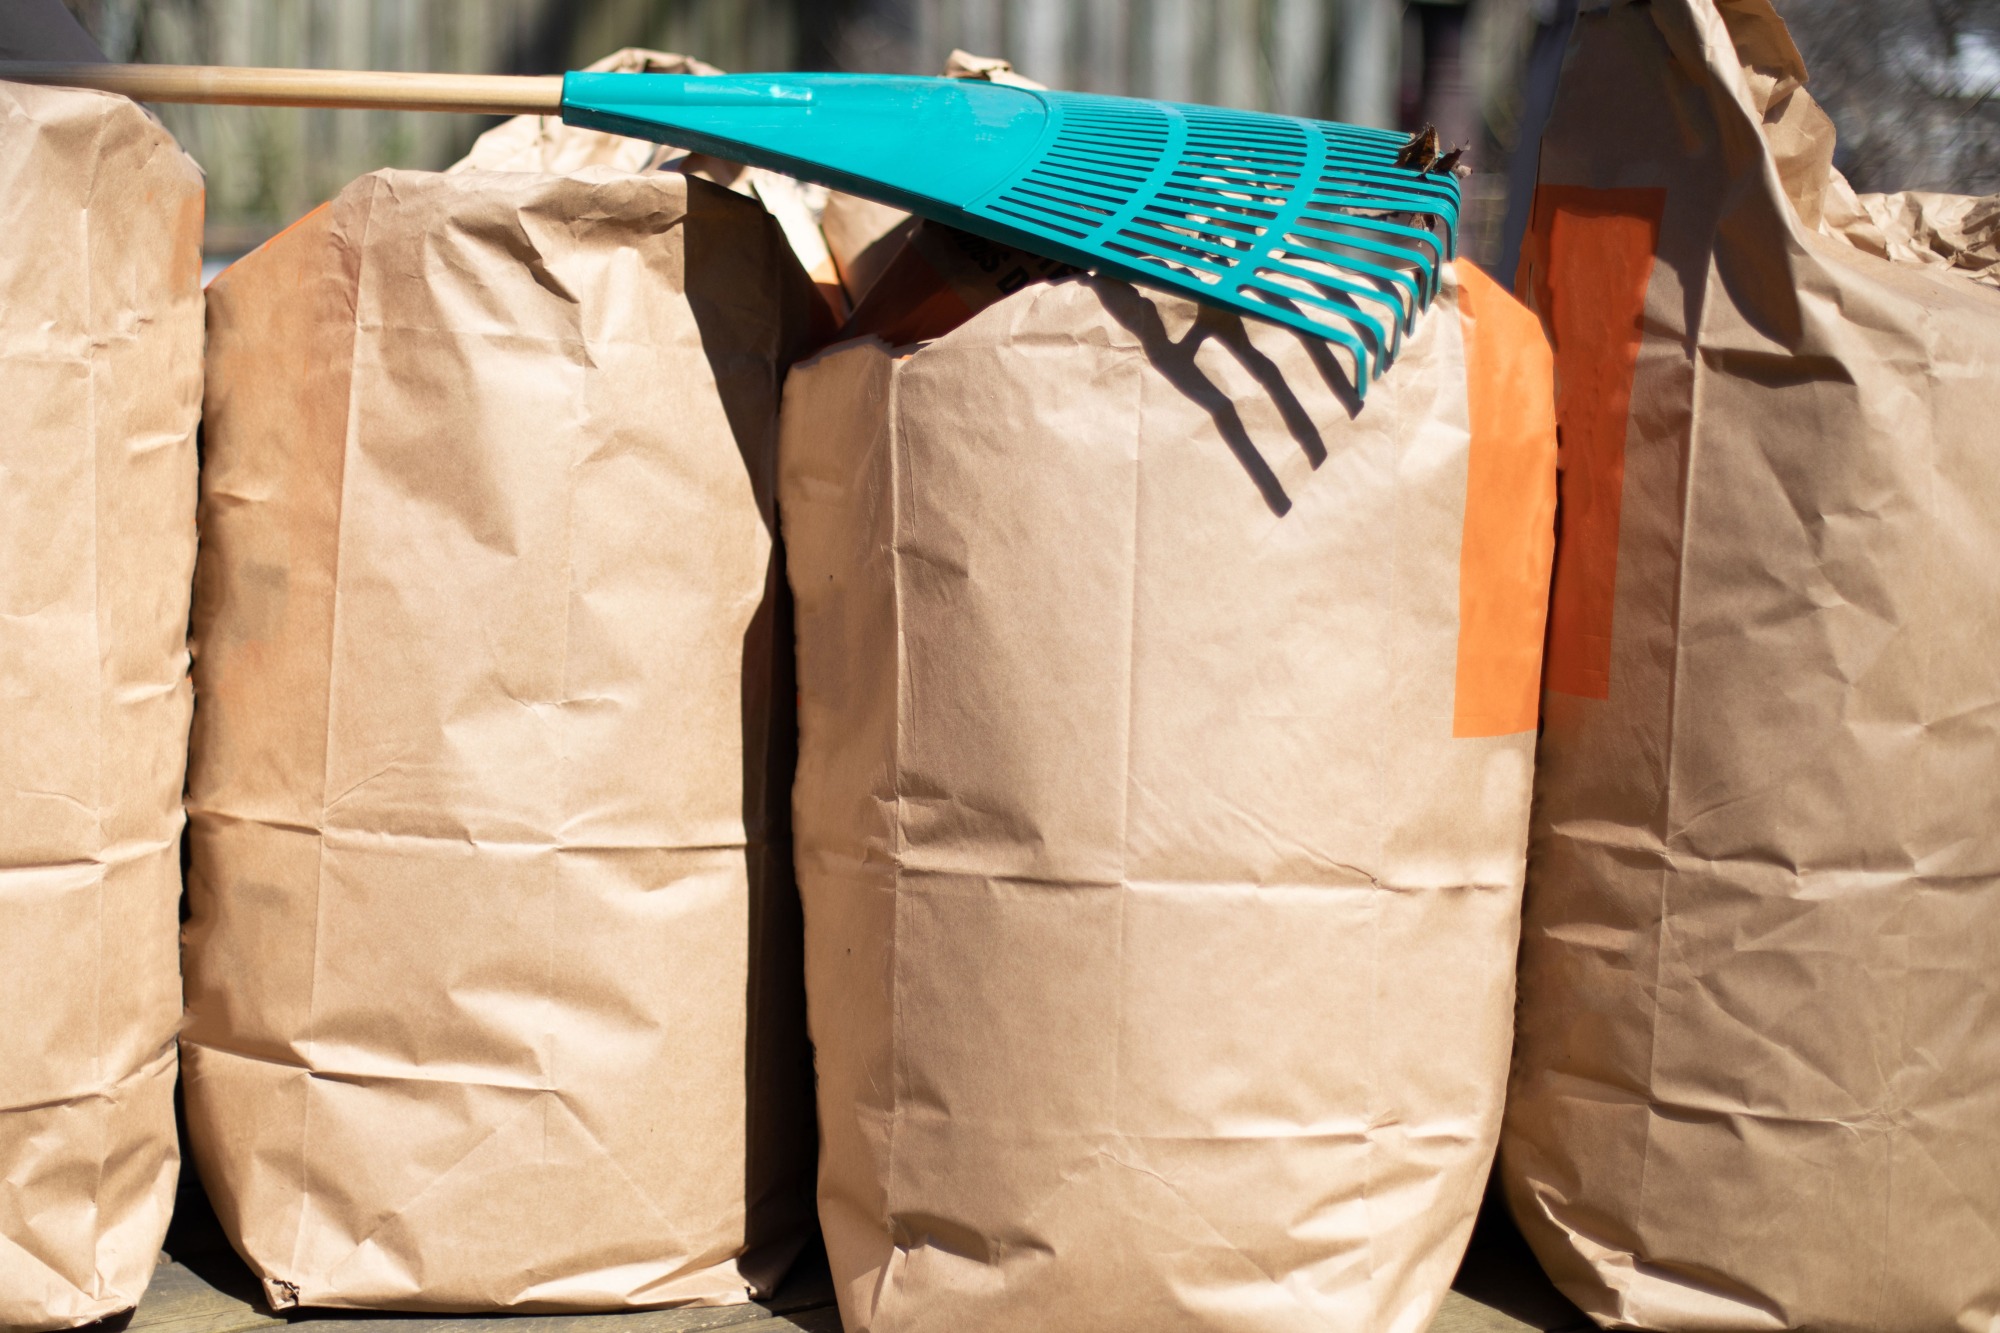 FREE Paper Yard Material Bags For Pickup